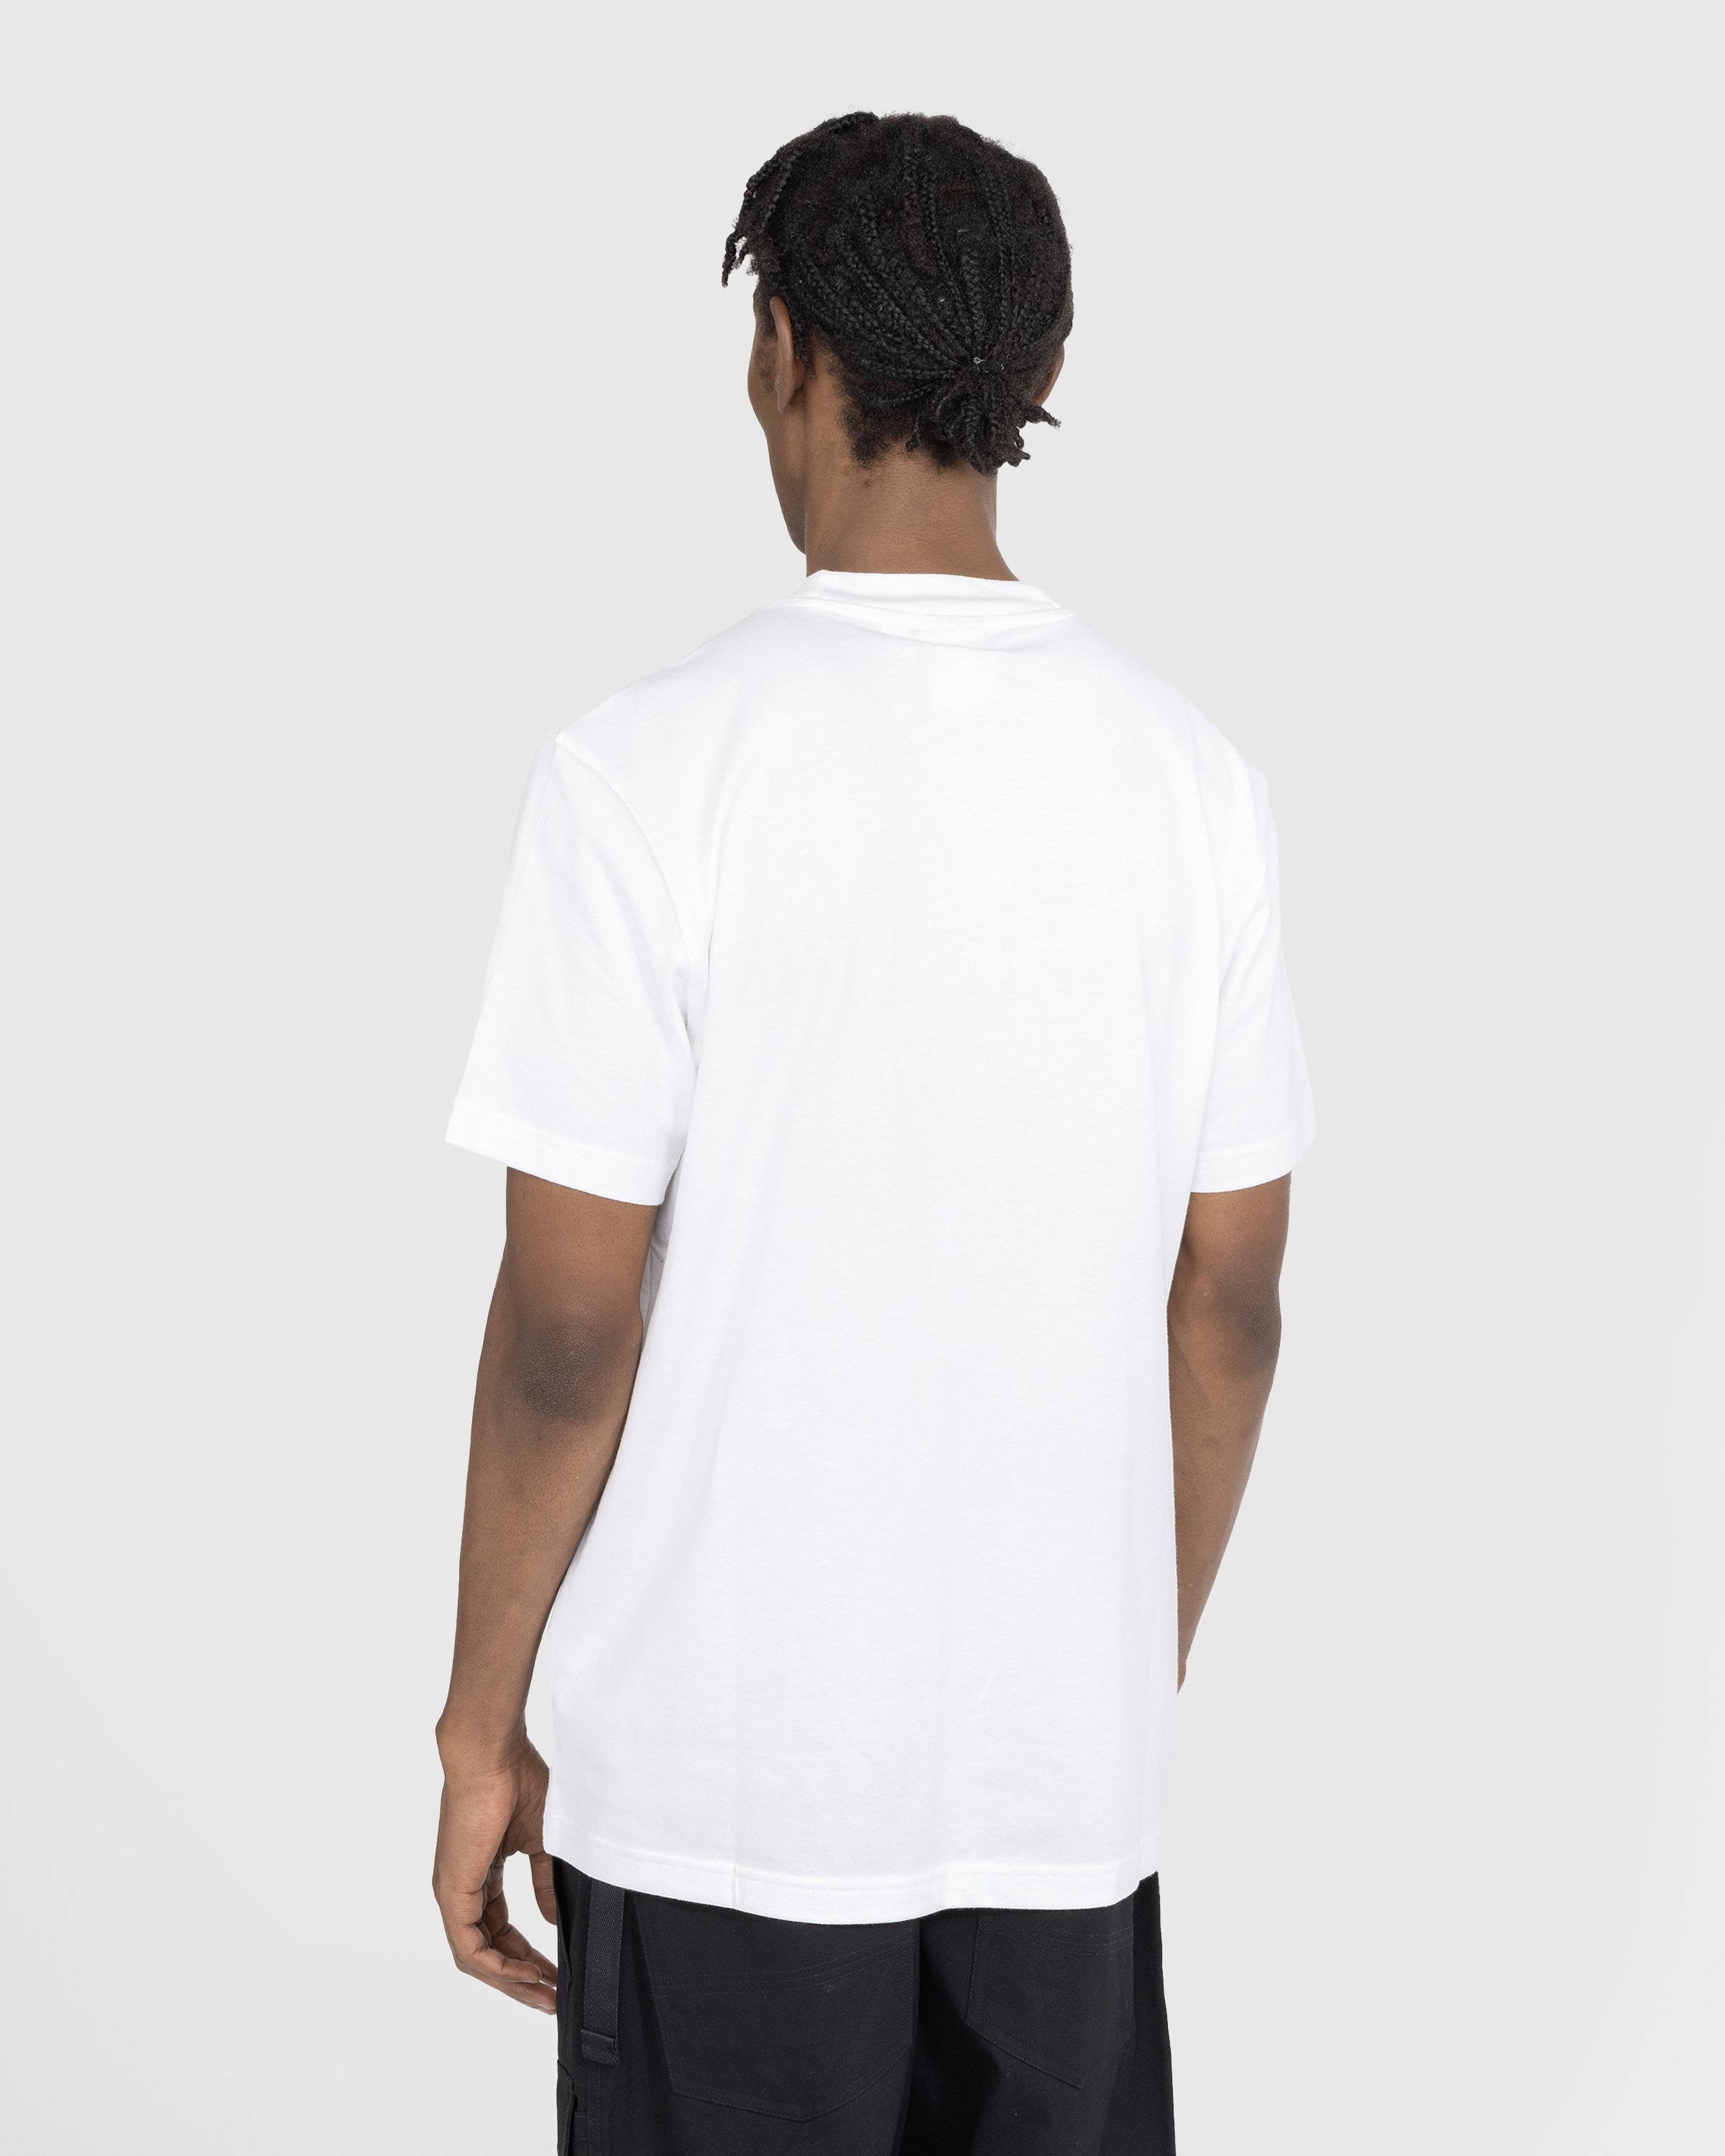 Adidas - Graphic Logo T-Shirt White - Clothing - White - Image 3